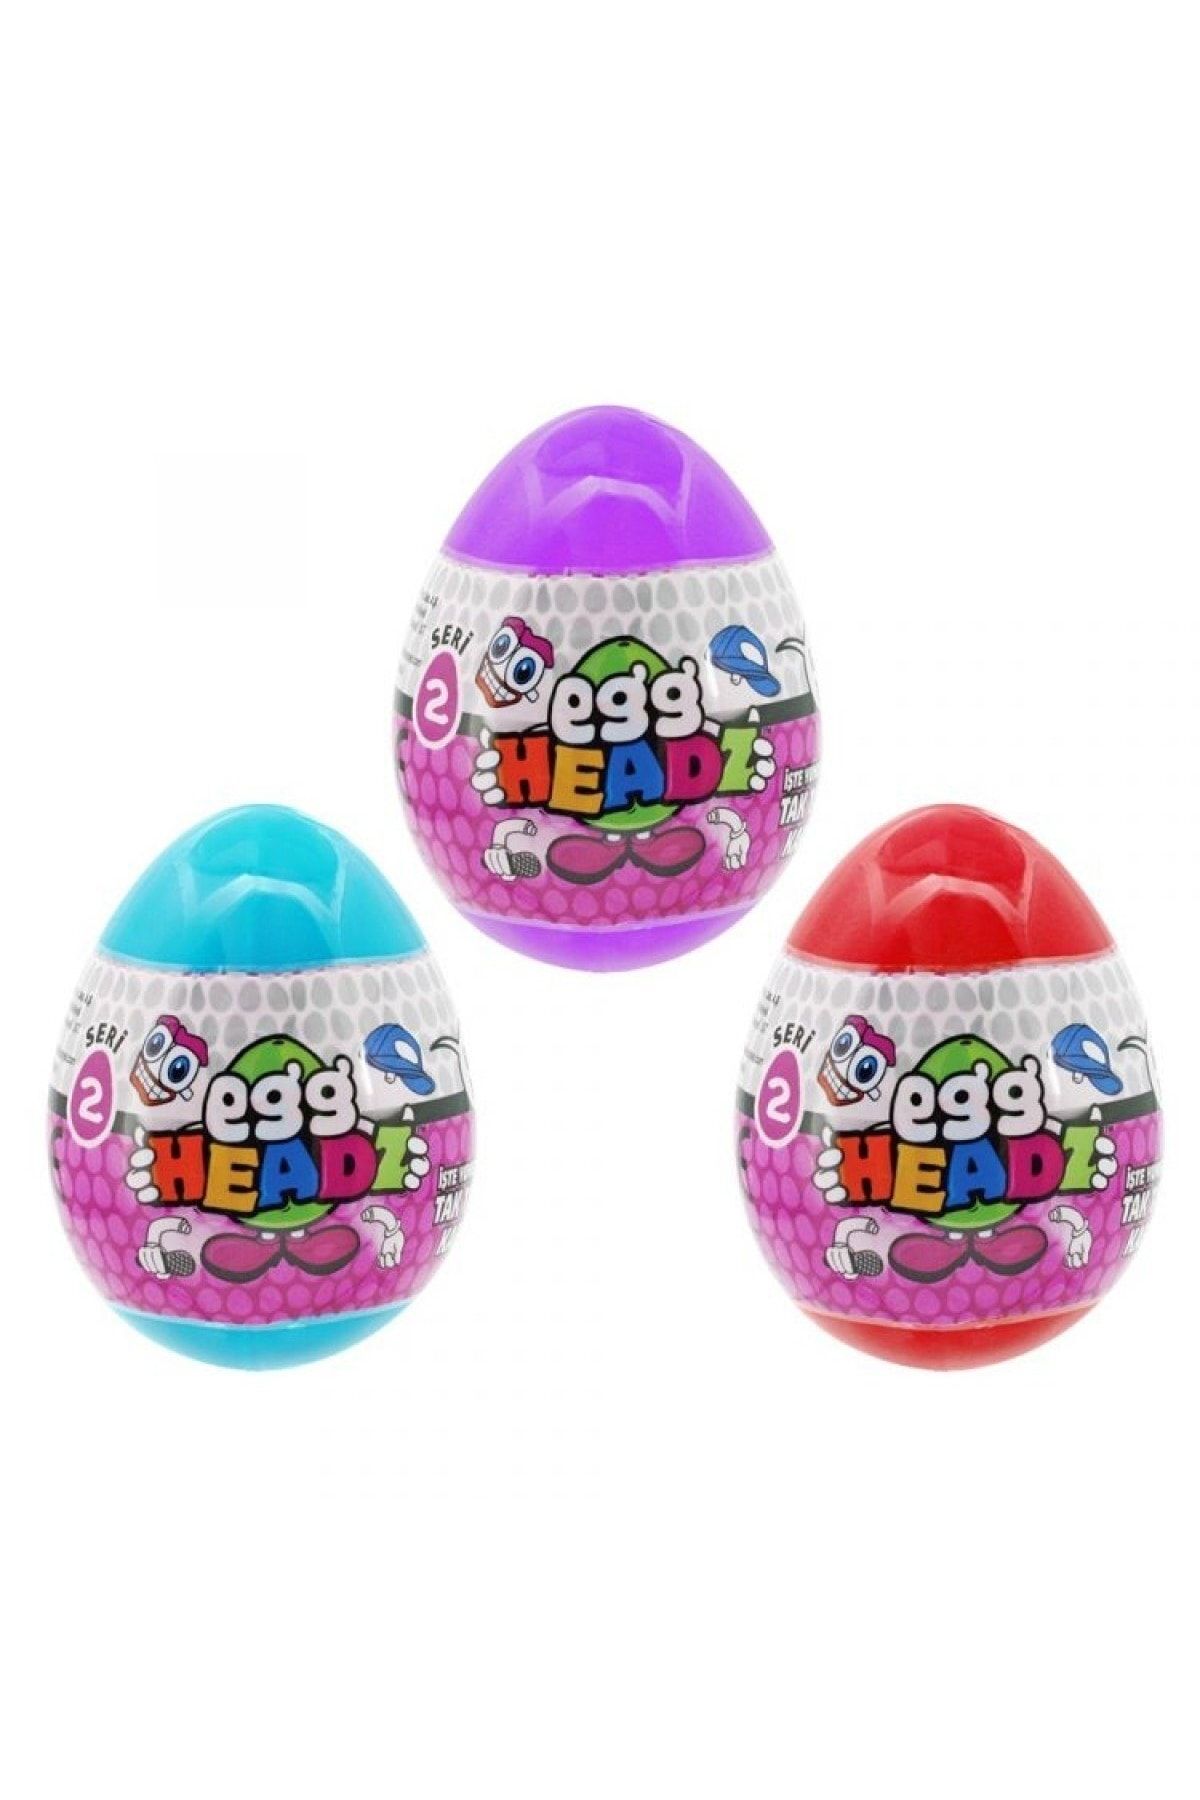 NECO TOYS Egg/0002 Yumurta Kafalar Sürpriz Yumurta Seri 2-stokta Olan 1 Adet Gönderilir